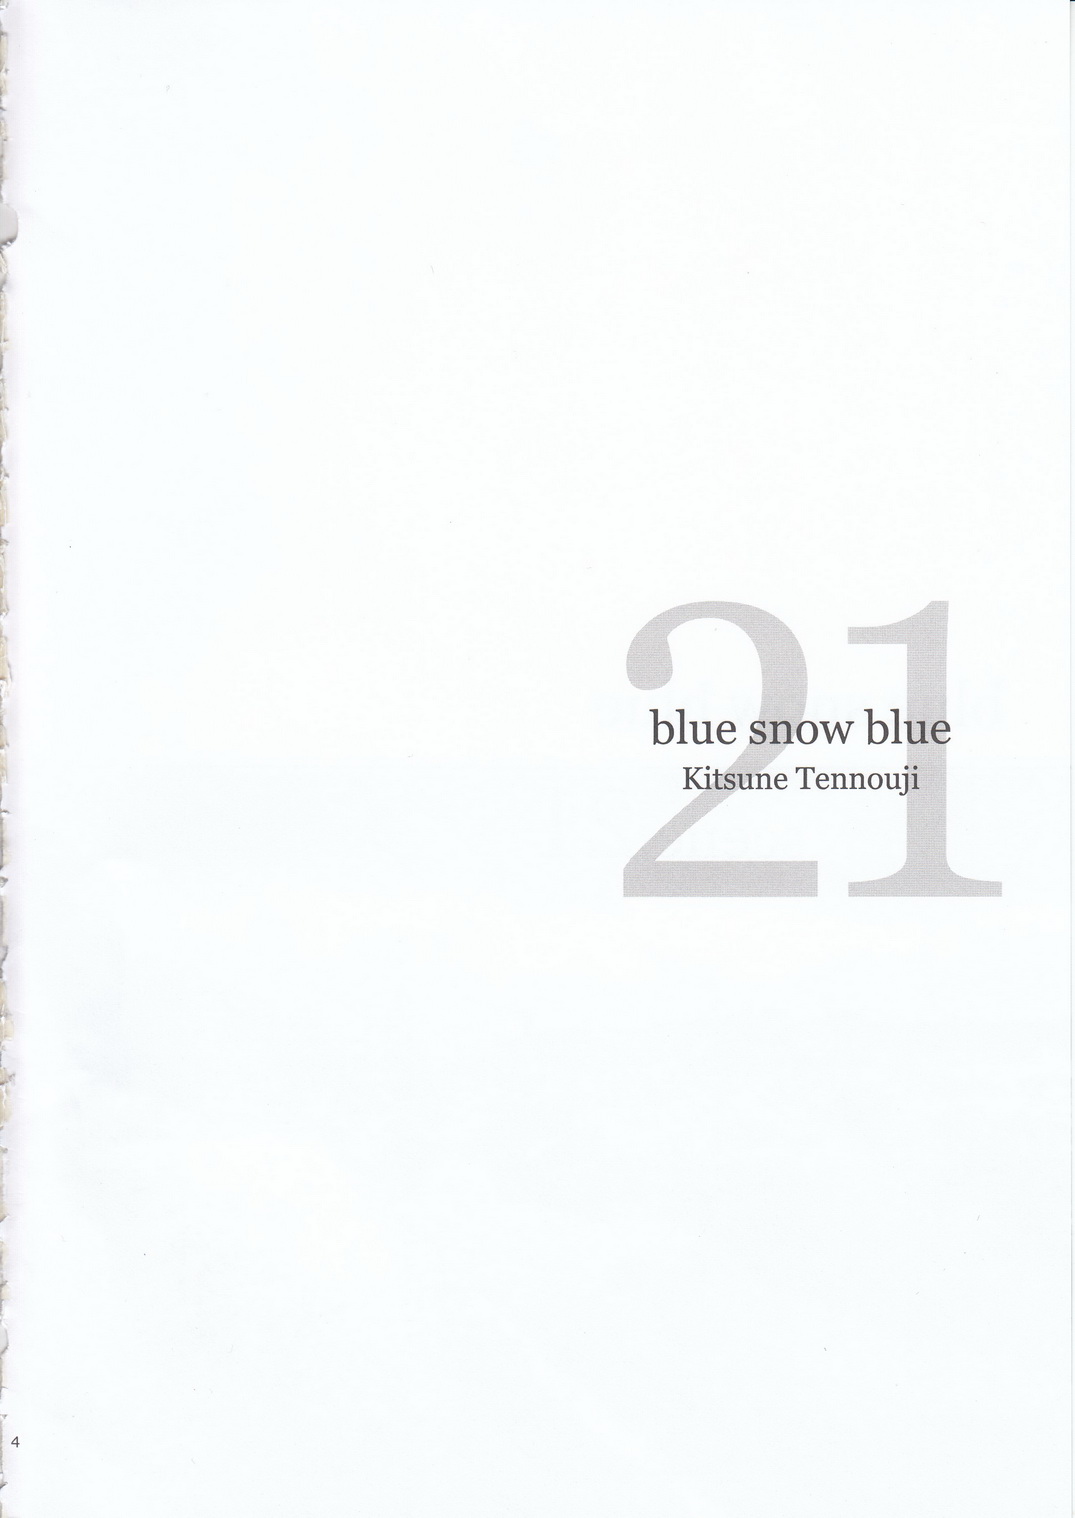 (C95) [わくわく動物園 (天王寺きつね)] blue snow blue scene.21